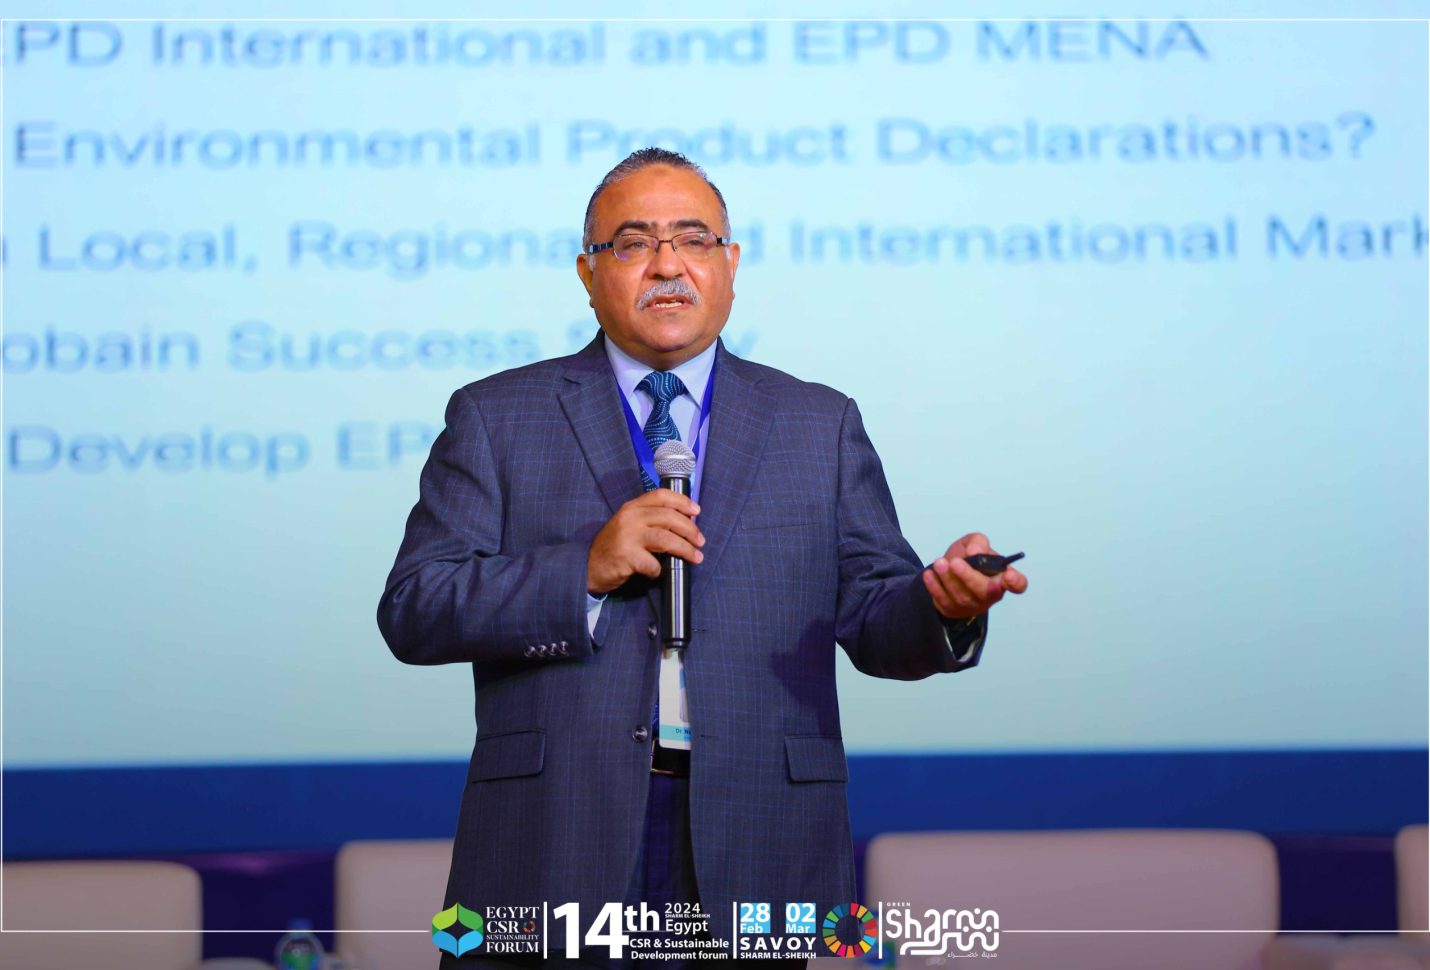 ناصر أيوب: حتى الآن تم نشر 15 تقريرا للإفصاح البيئي للمنتج و9 في مرحلة التسجيل في مصر